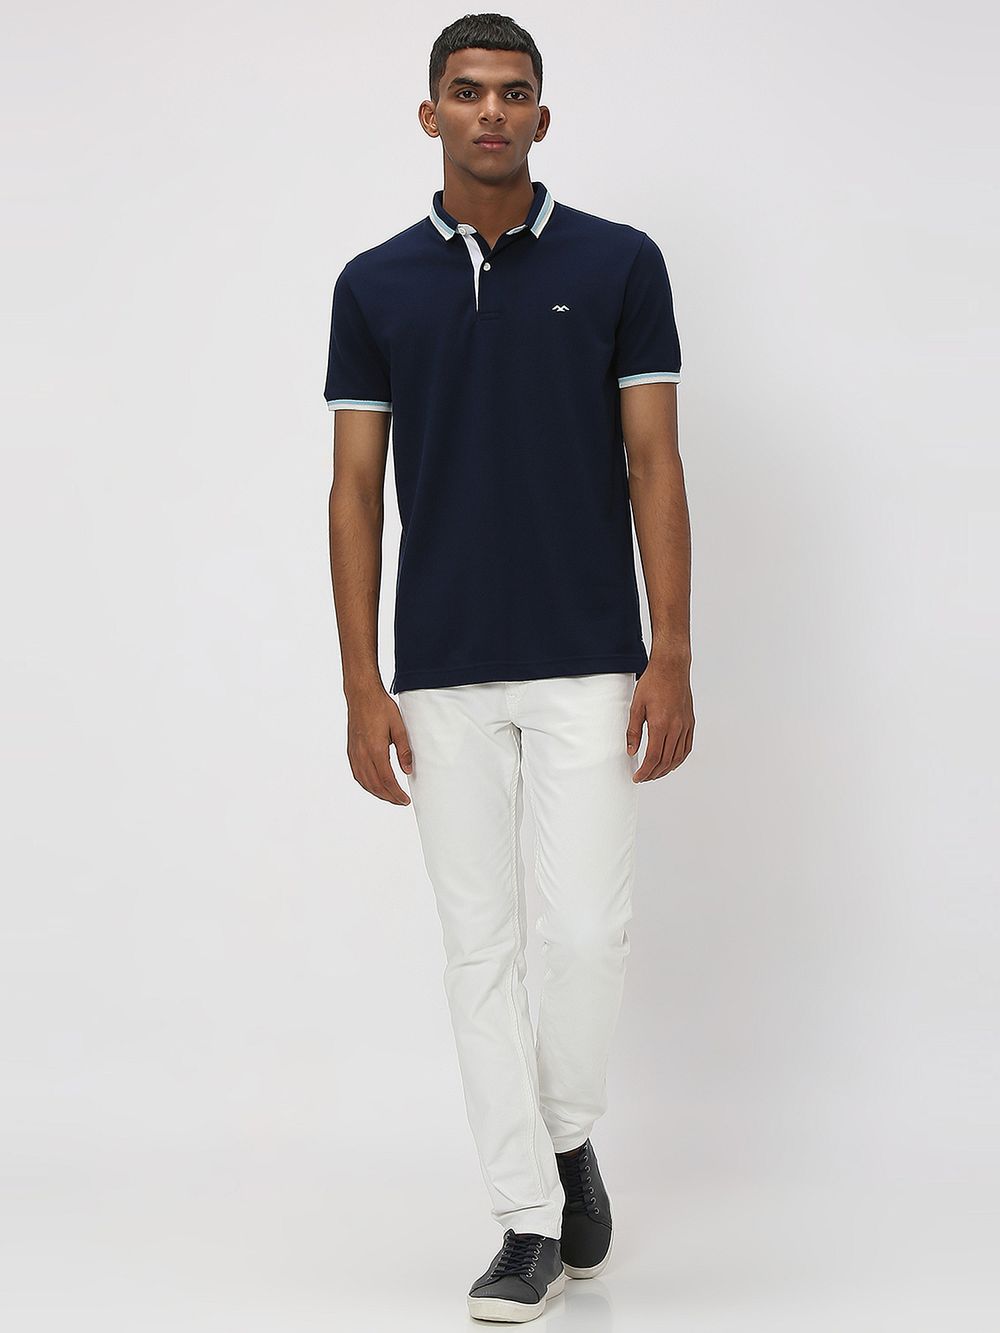 Navy & White Tipped Collar Pique Polo T-Shirt